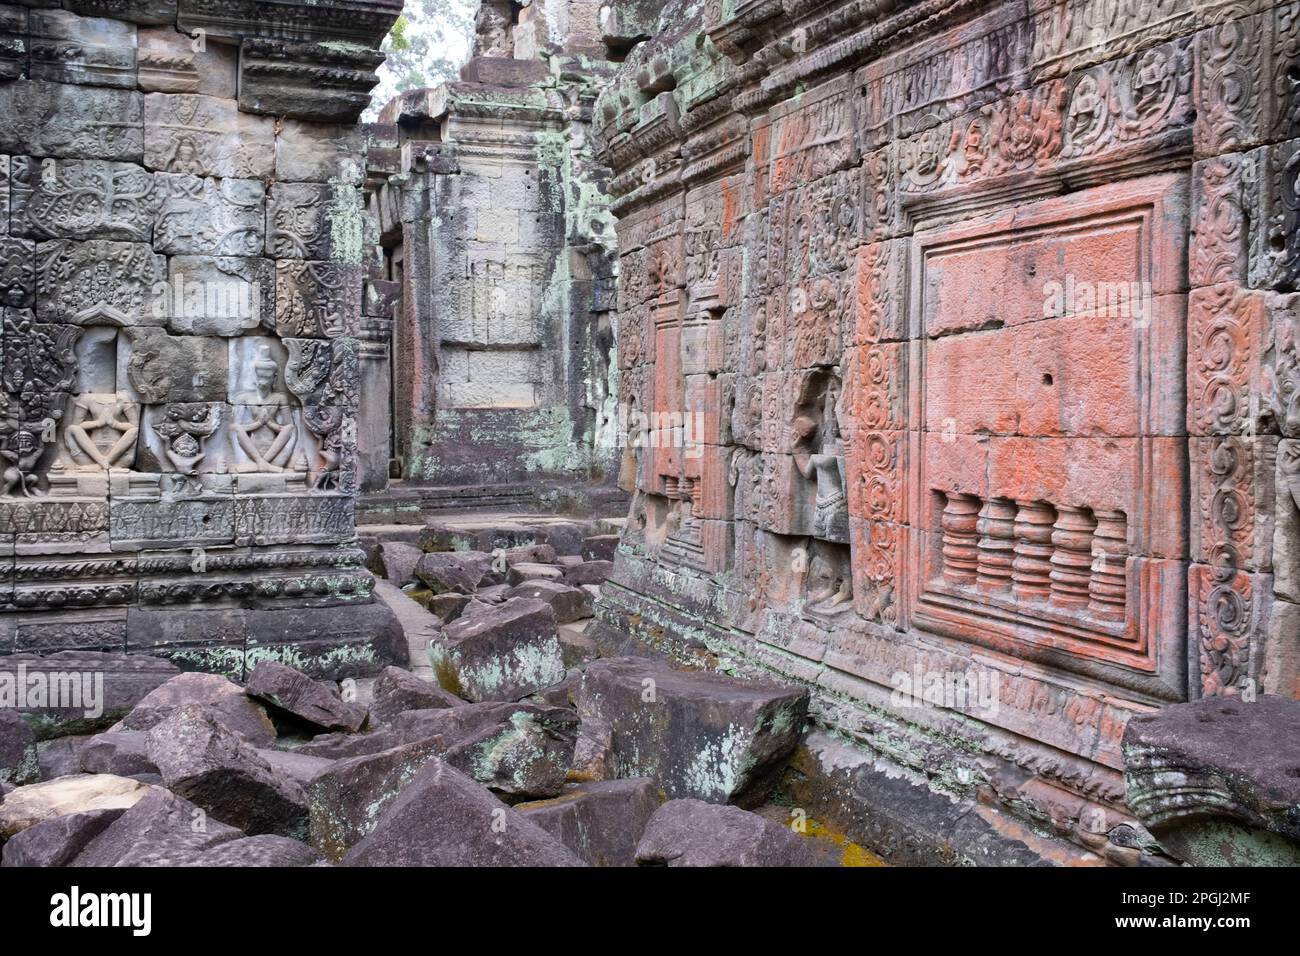 Cambodge: Preah Khan (Temple de l'épée sacrée). Preah Khan a été construit à la fin du 12th siècle (1191) par Jayavarman VII et est situé juste au nord d'Angkor Thom. Le temple a été construit sur le site de la victoire de Jayavarman VII sur les Chams envahisseurs en 1191. Elle était le centre d'une organisation importante, avec près de 100 000 fonctionnaires et fonctionnaires. Il a servi comme une université bouddhiste à un moment donné. La déité primaire du temple est la boddhisatva Avalokiteshvara sous la forme du père de Jayavarman. Banque D'Images